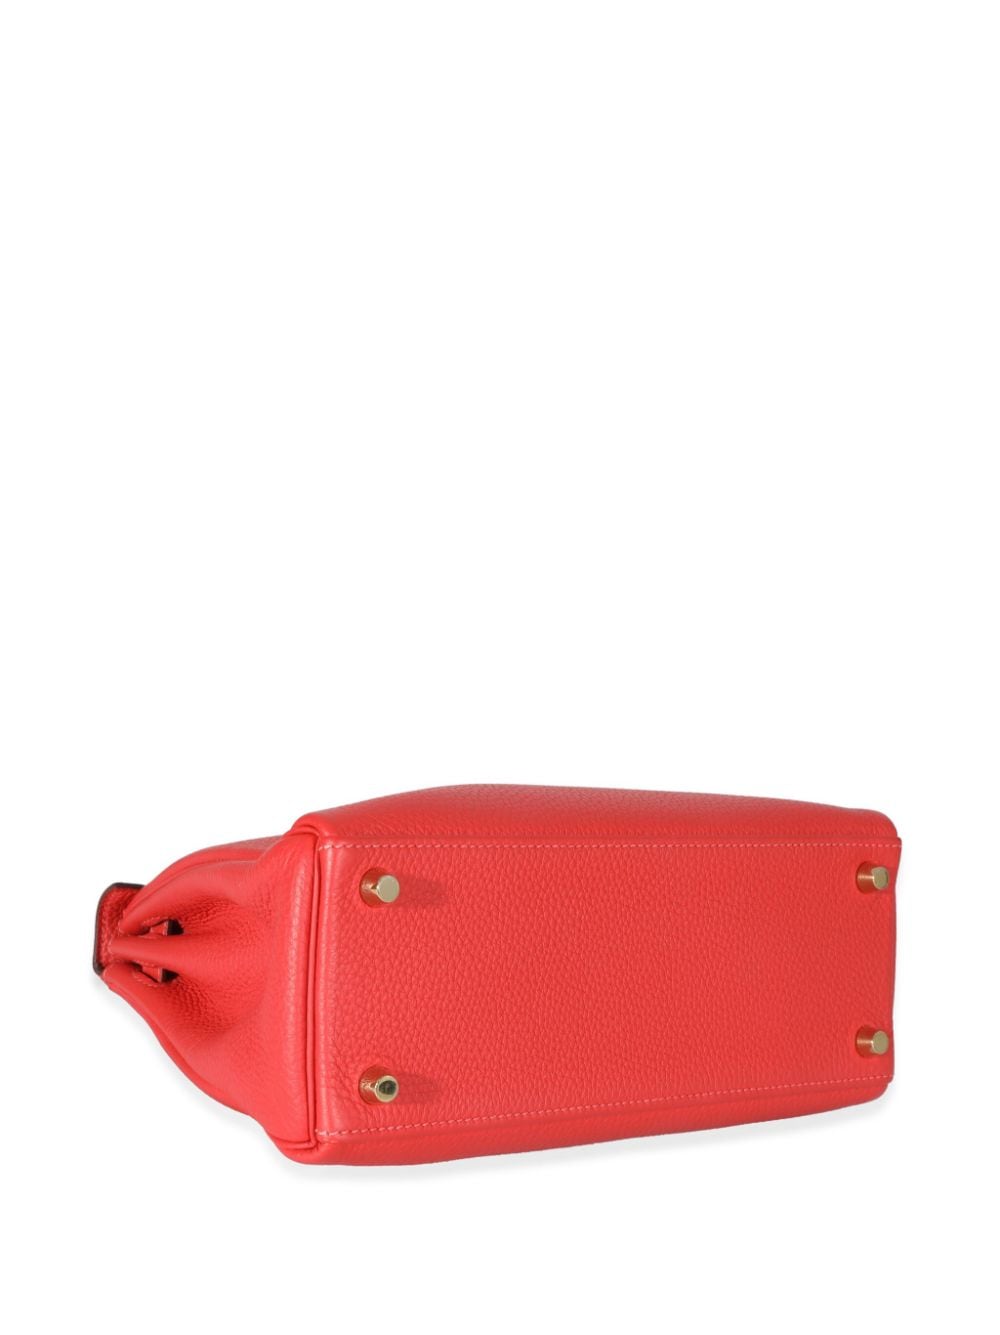 Pre-owned Hermes 2014  Kelly 25 Handbag In Red